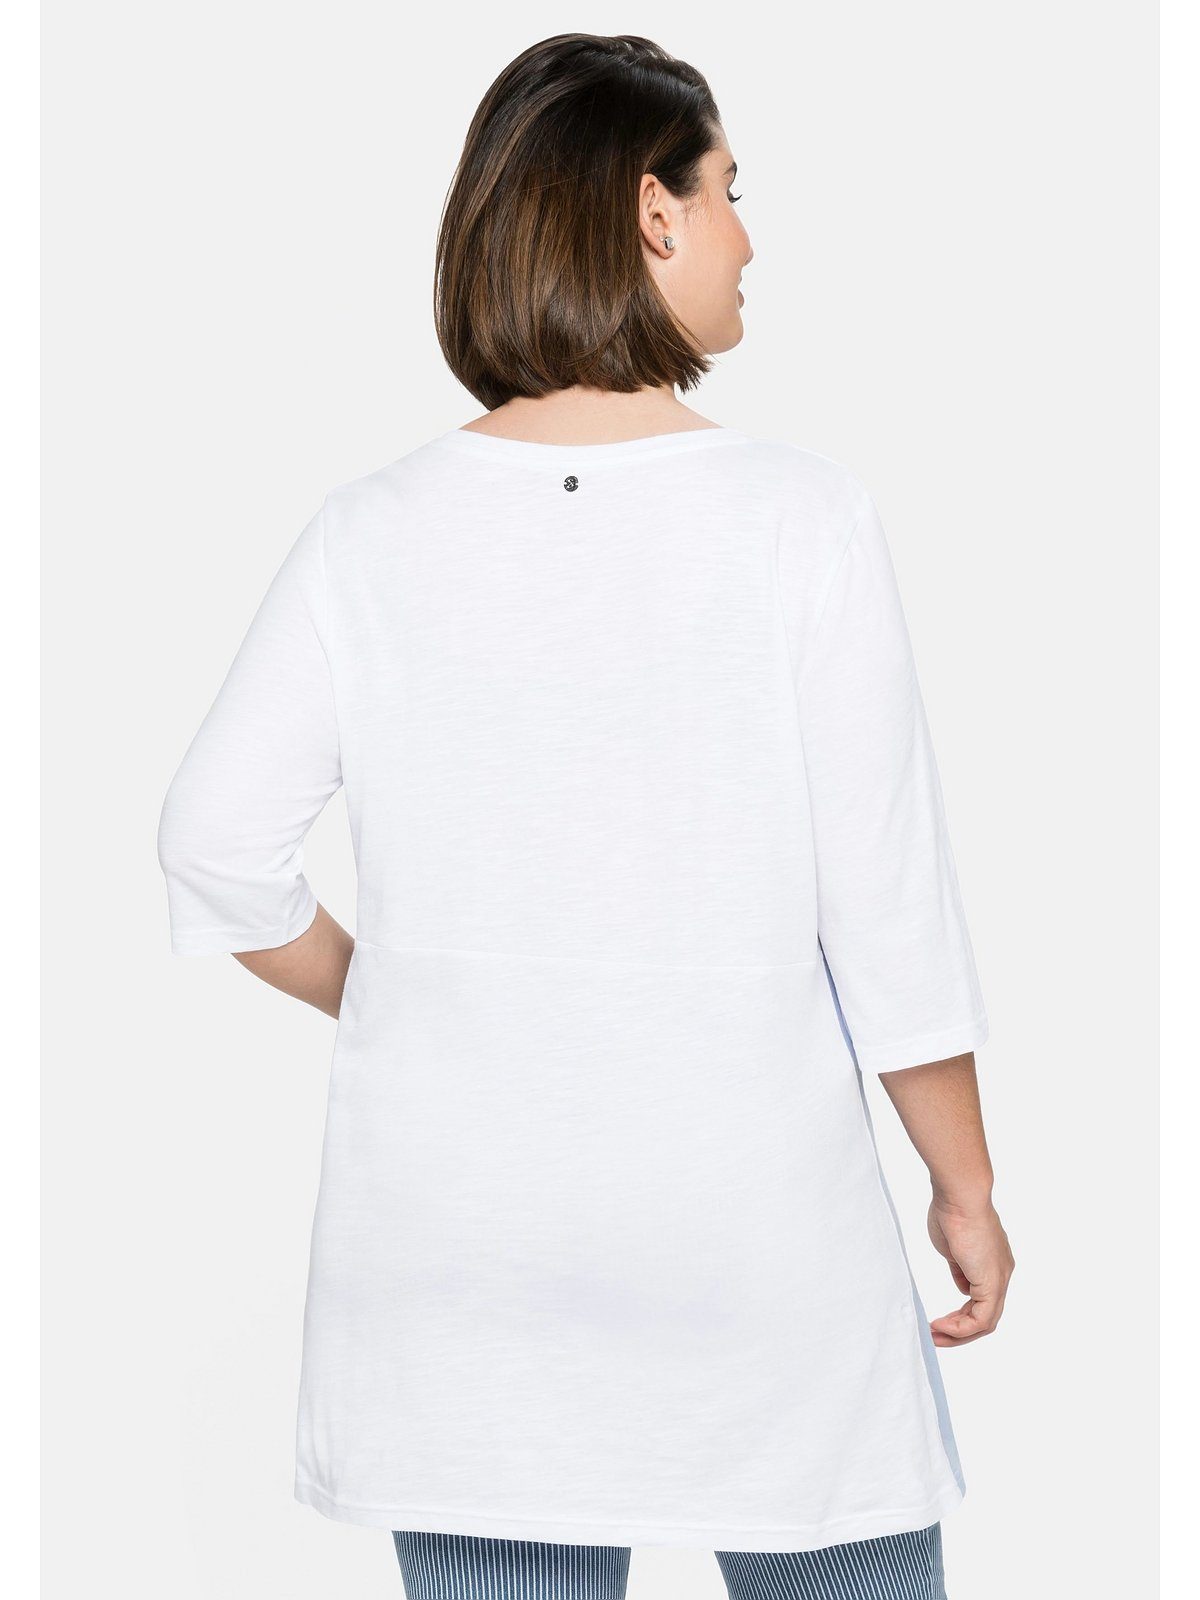 Longshirt in Form, weiß Größen mit Große Kontrasteinsätzen ausgestellter Sheego